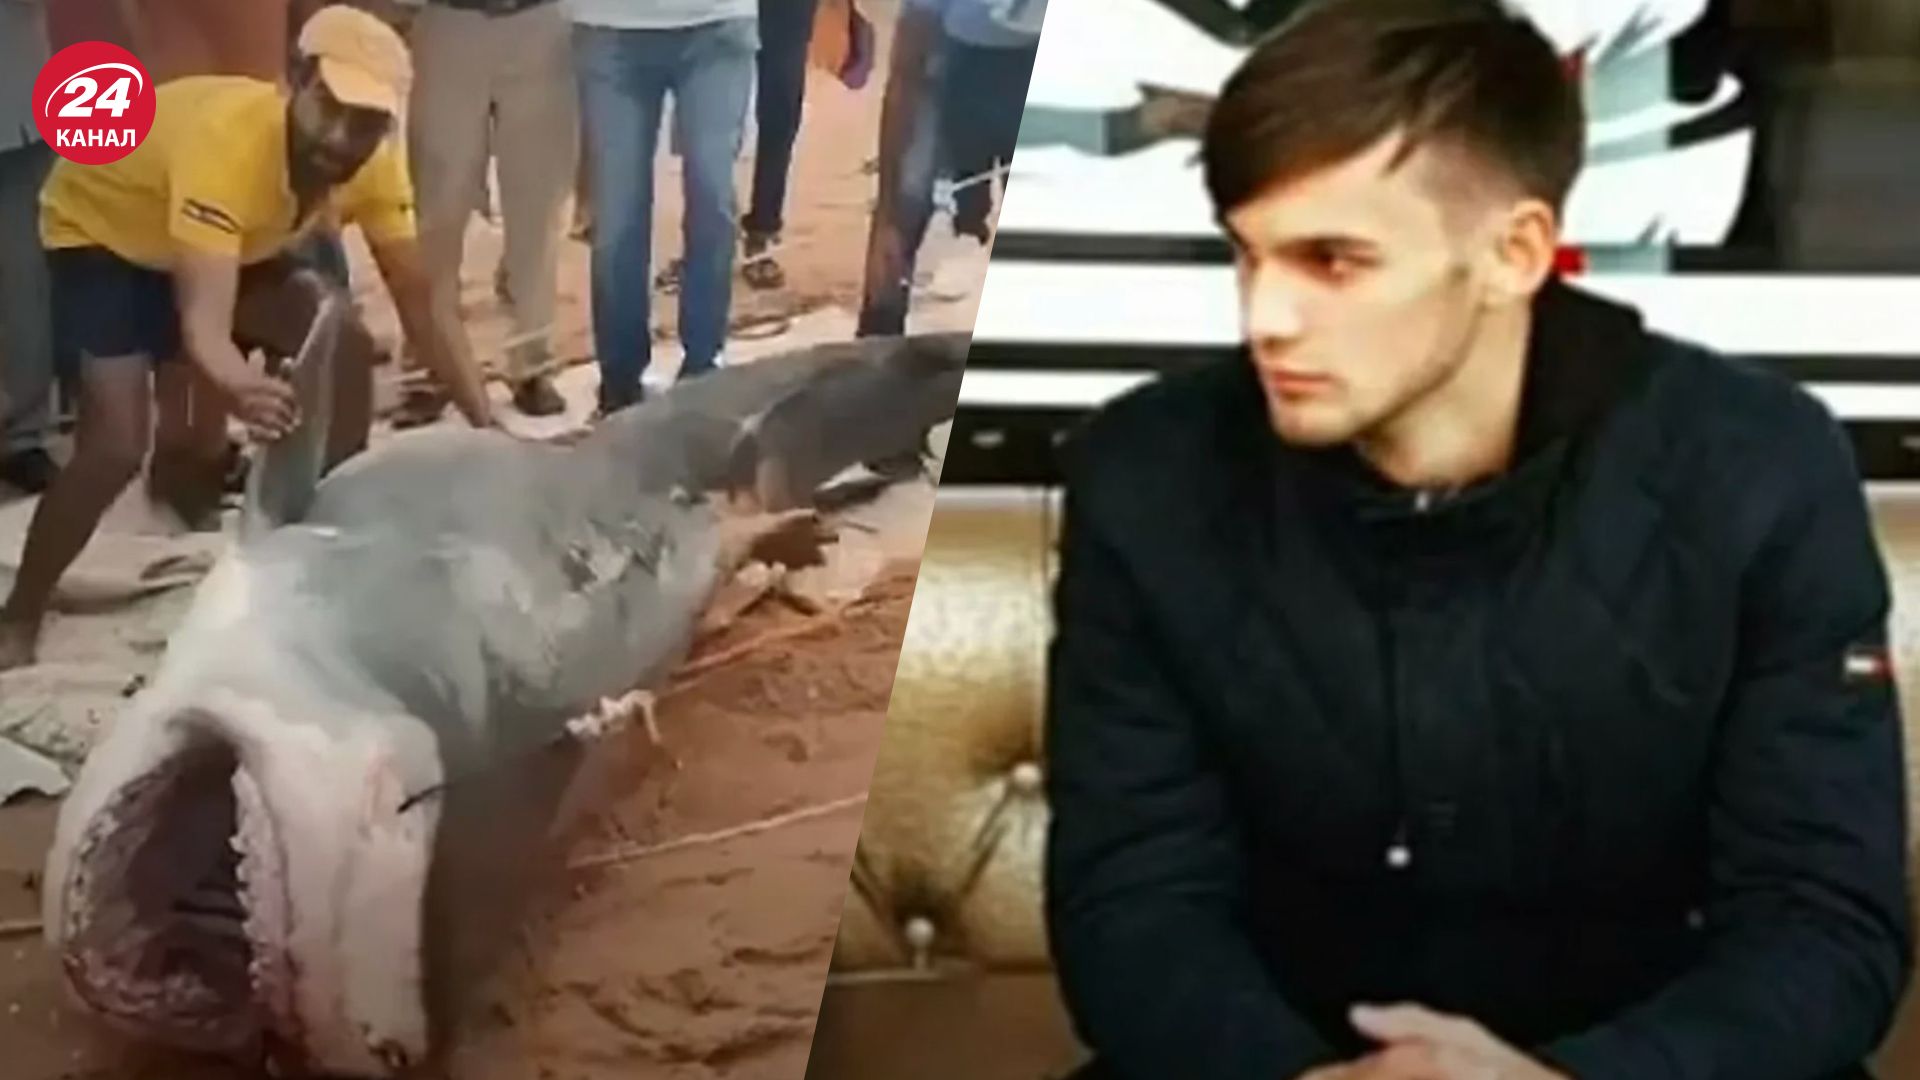 Акула съела россиянина в Египте - СМИ рассказали подробности происшествия